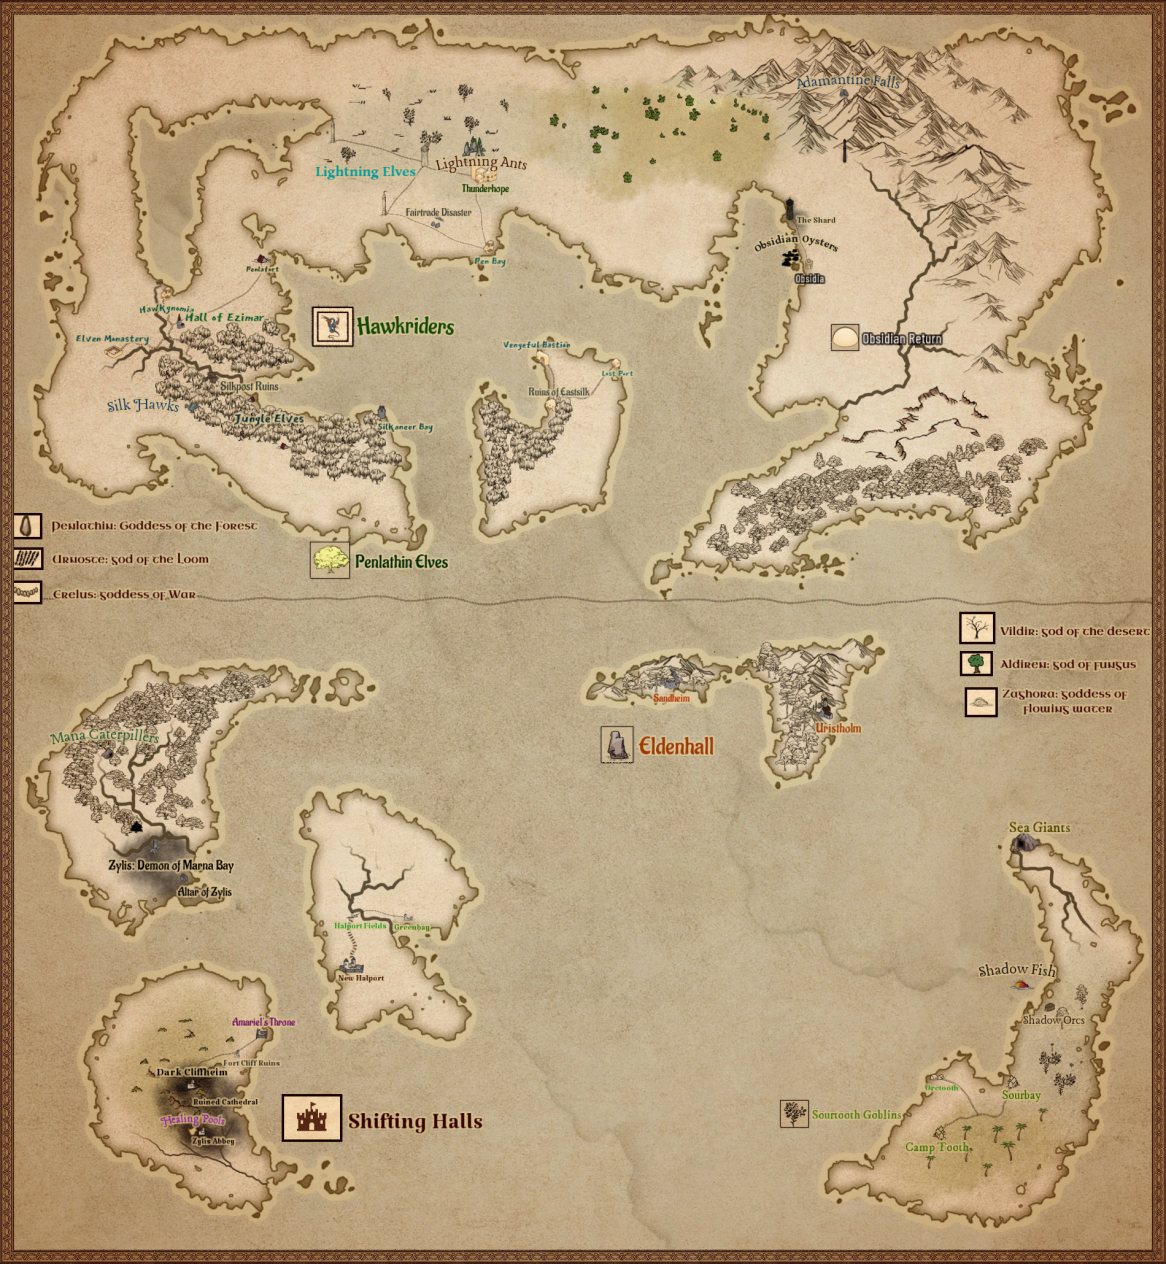 Mappa Imperium